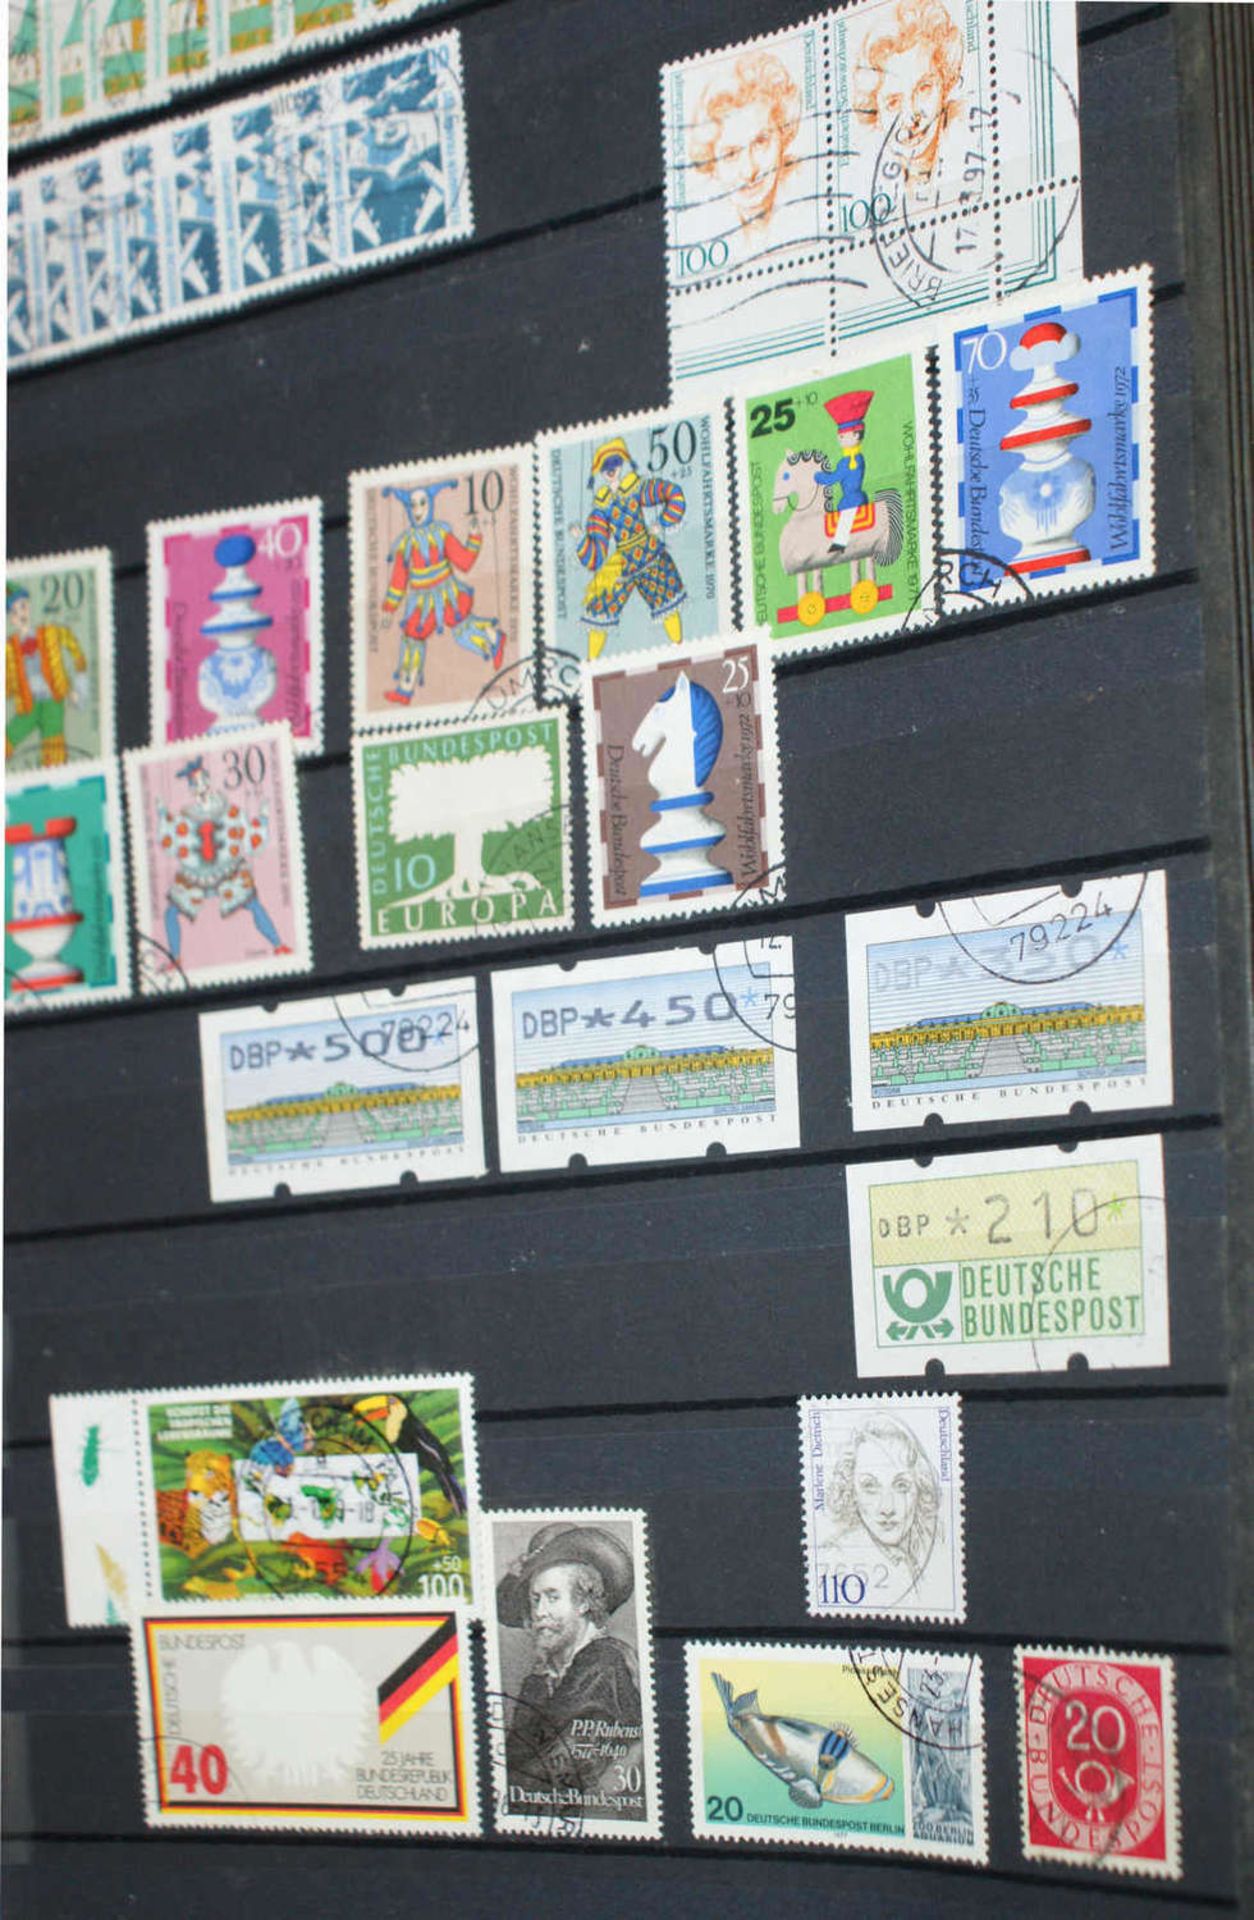 BRD - Briefmarken Dubletten Konvolut, bestehend aus 20 Alben, teilweise schlecht gelagert. - Image 3 of 6